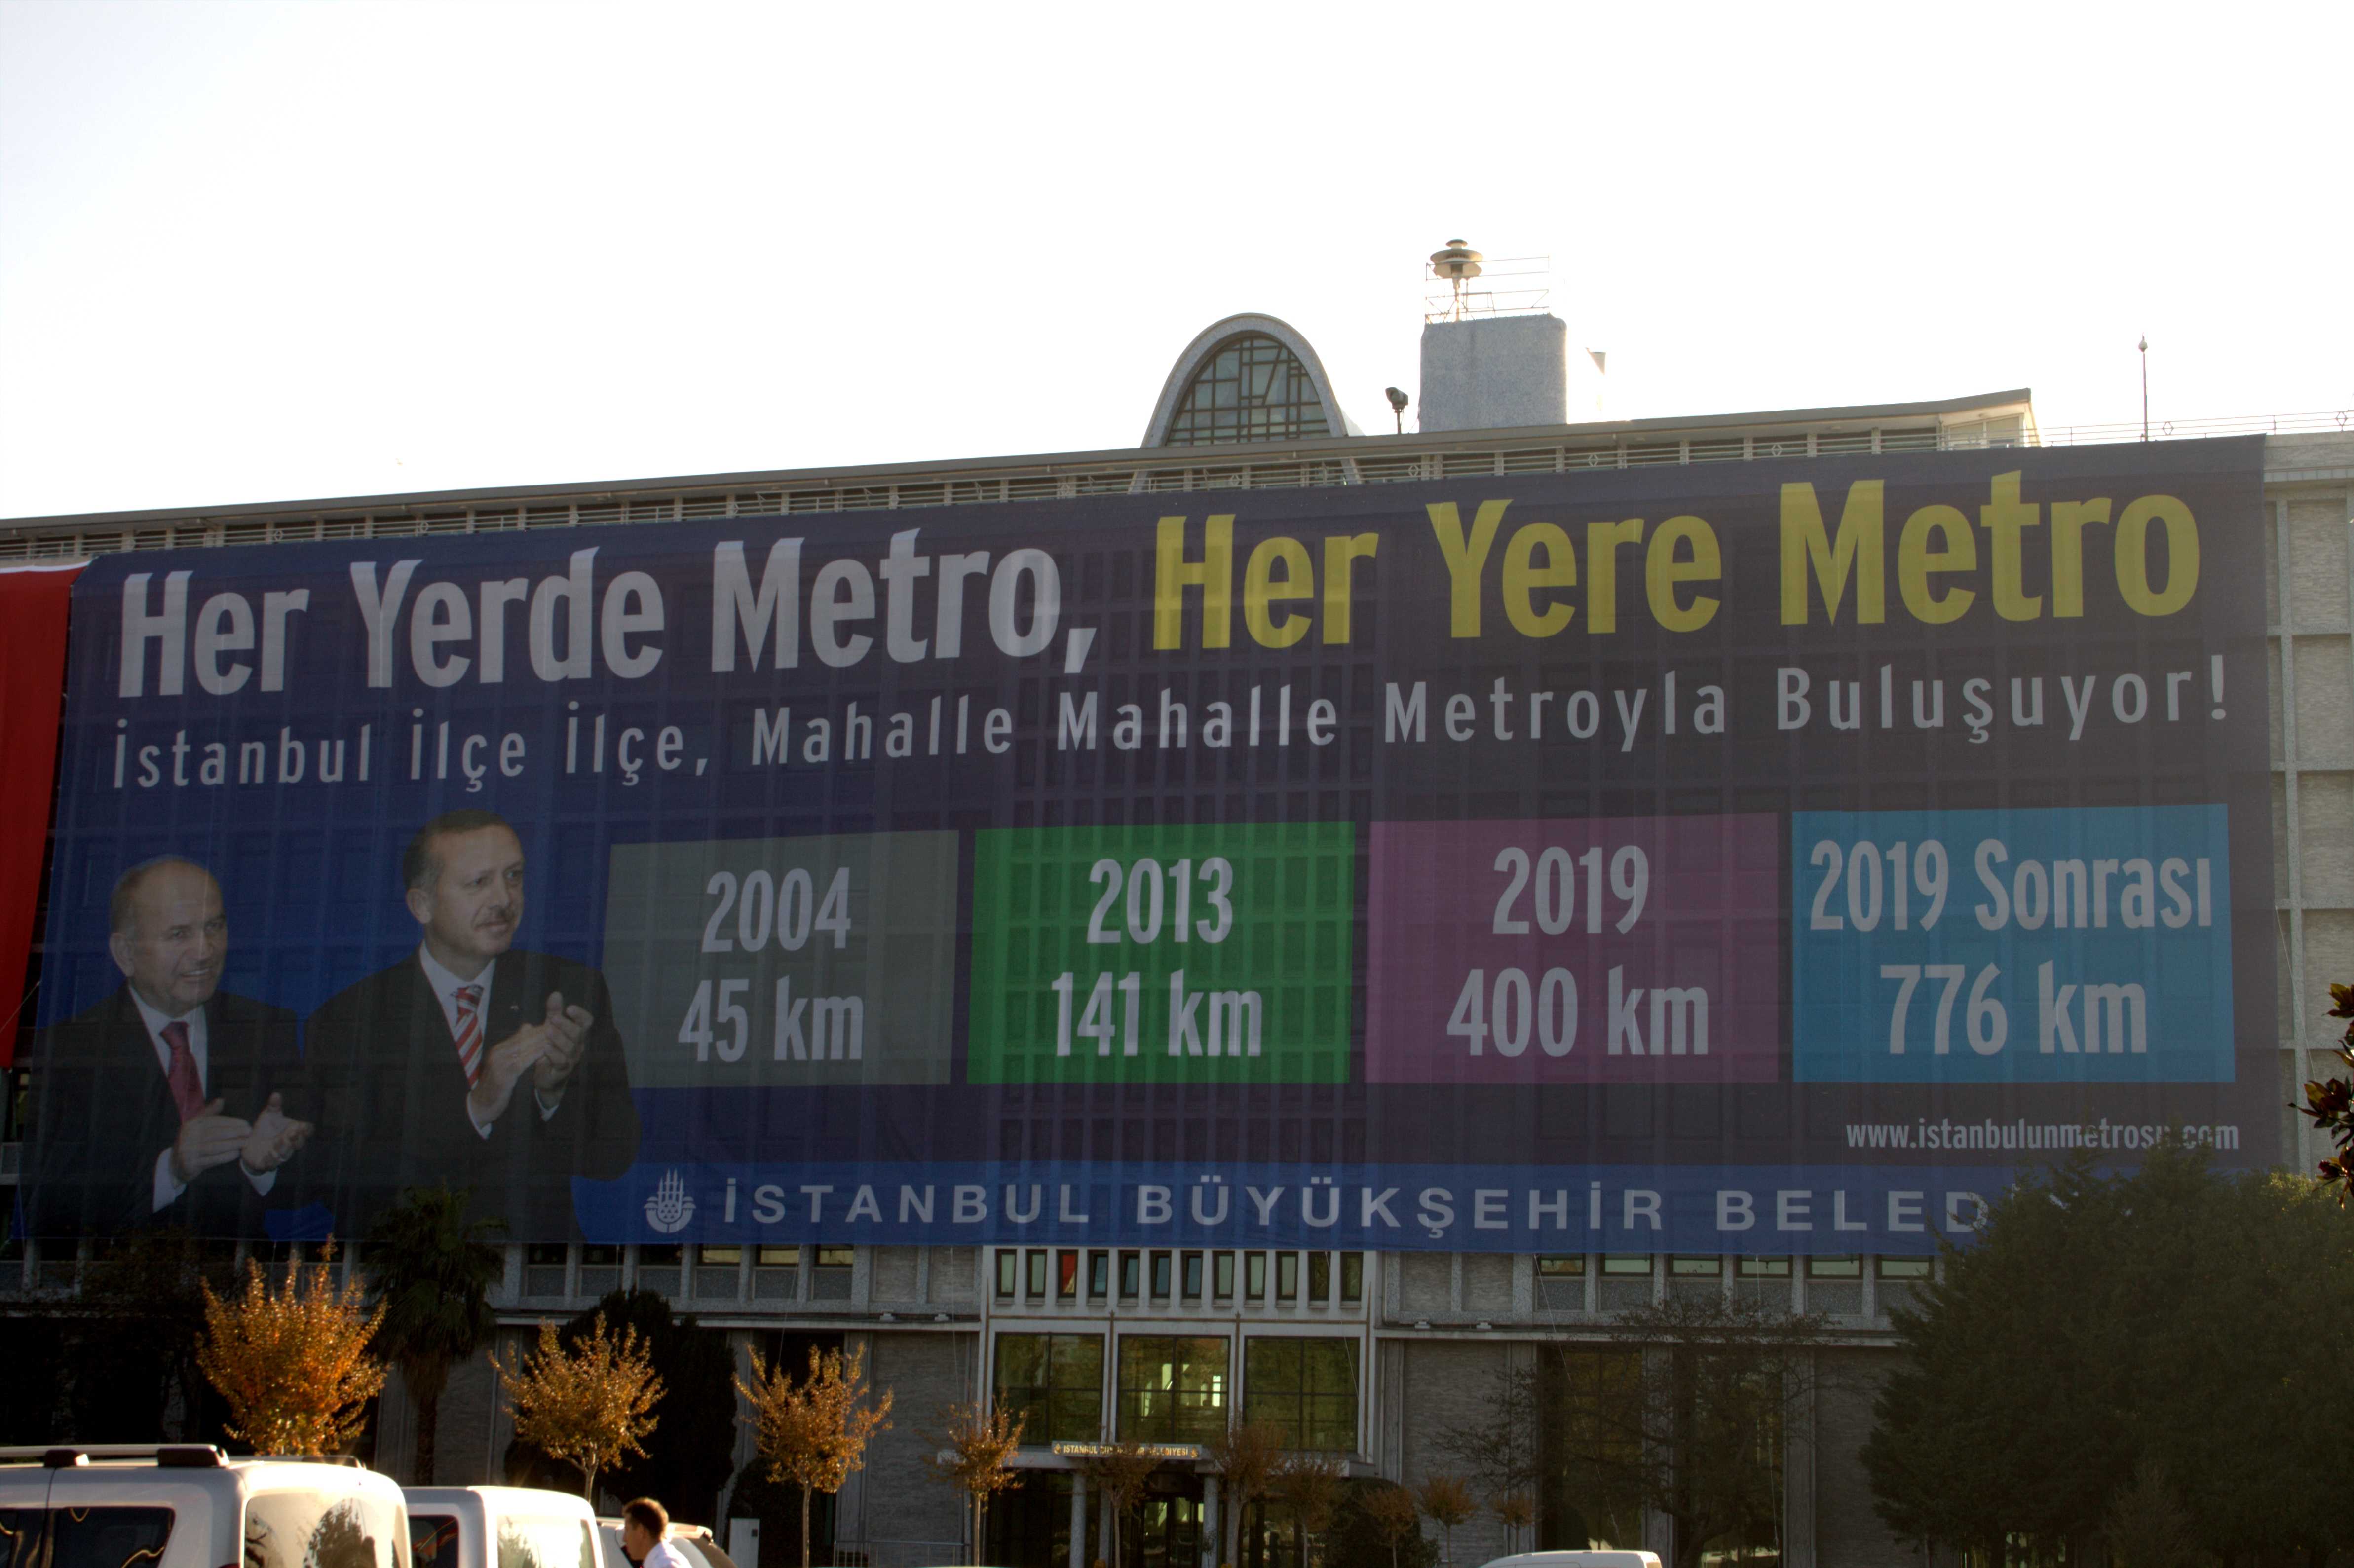 La metro di Istanbul, marketing elettorale